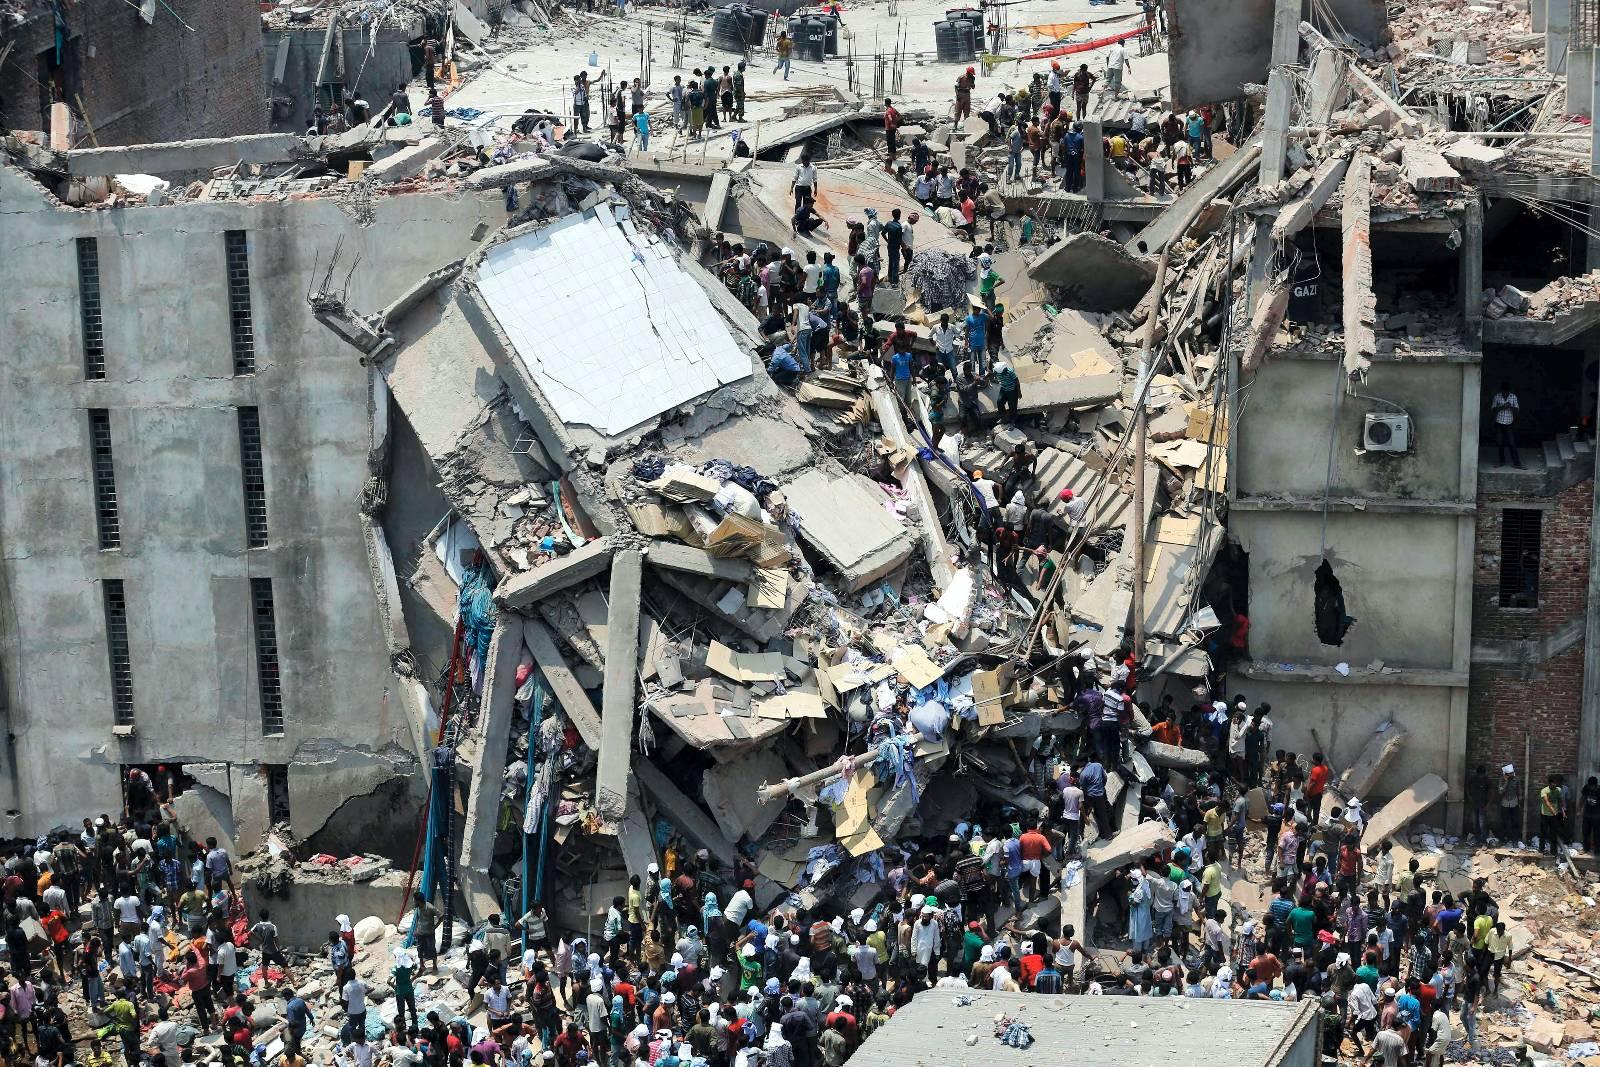 I dagene før fabrikkbygningen Rana Plaza kollapset i april, protesterte tekstilarbeiderne mot de dype sprekkene i veggene. De fikk klar beskjed om å komme seg på jobb likevel, og da det nietasjes høye bygget raste sammen ble 3000 mennesker fanget i ruinene. 1125 mennesker mistet livet.